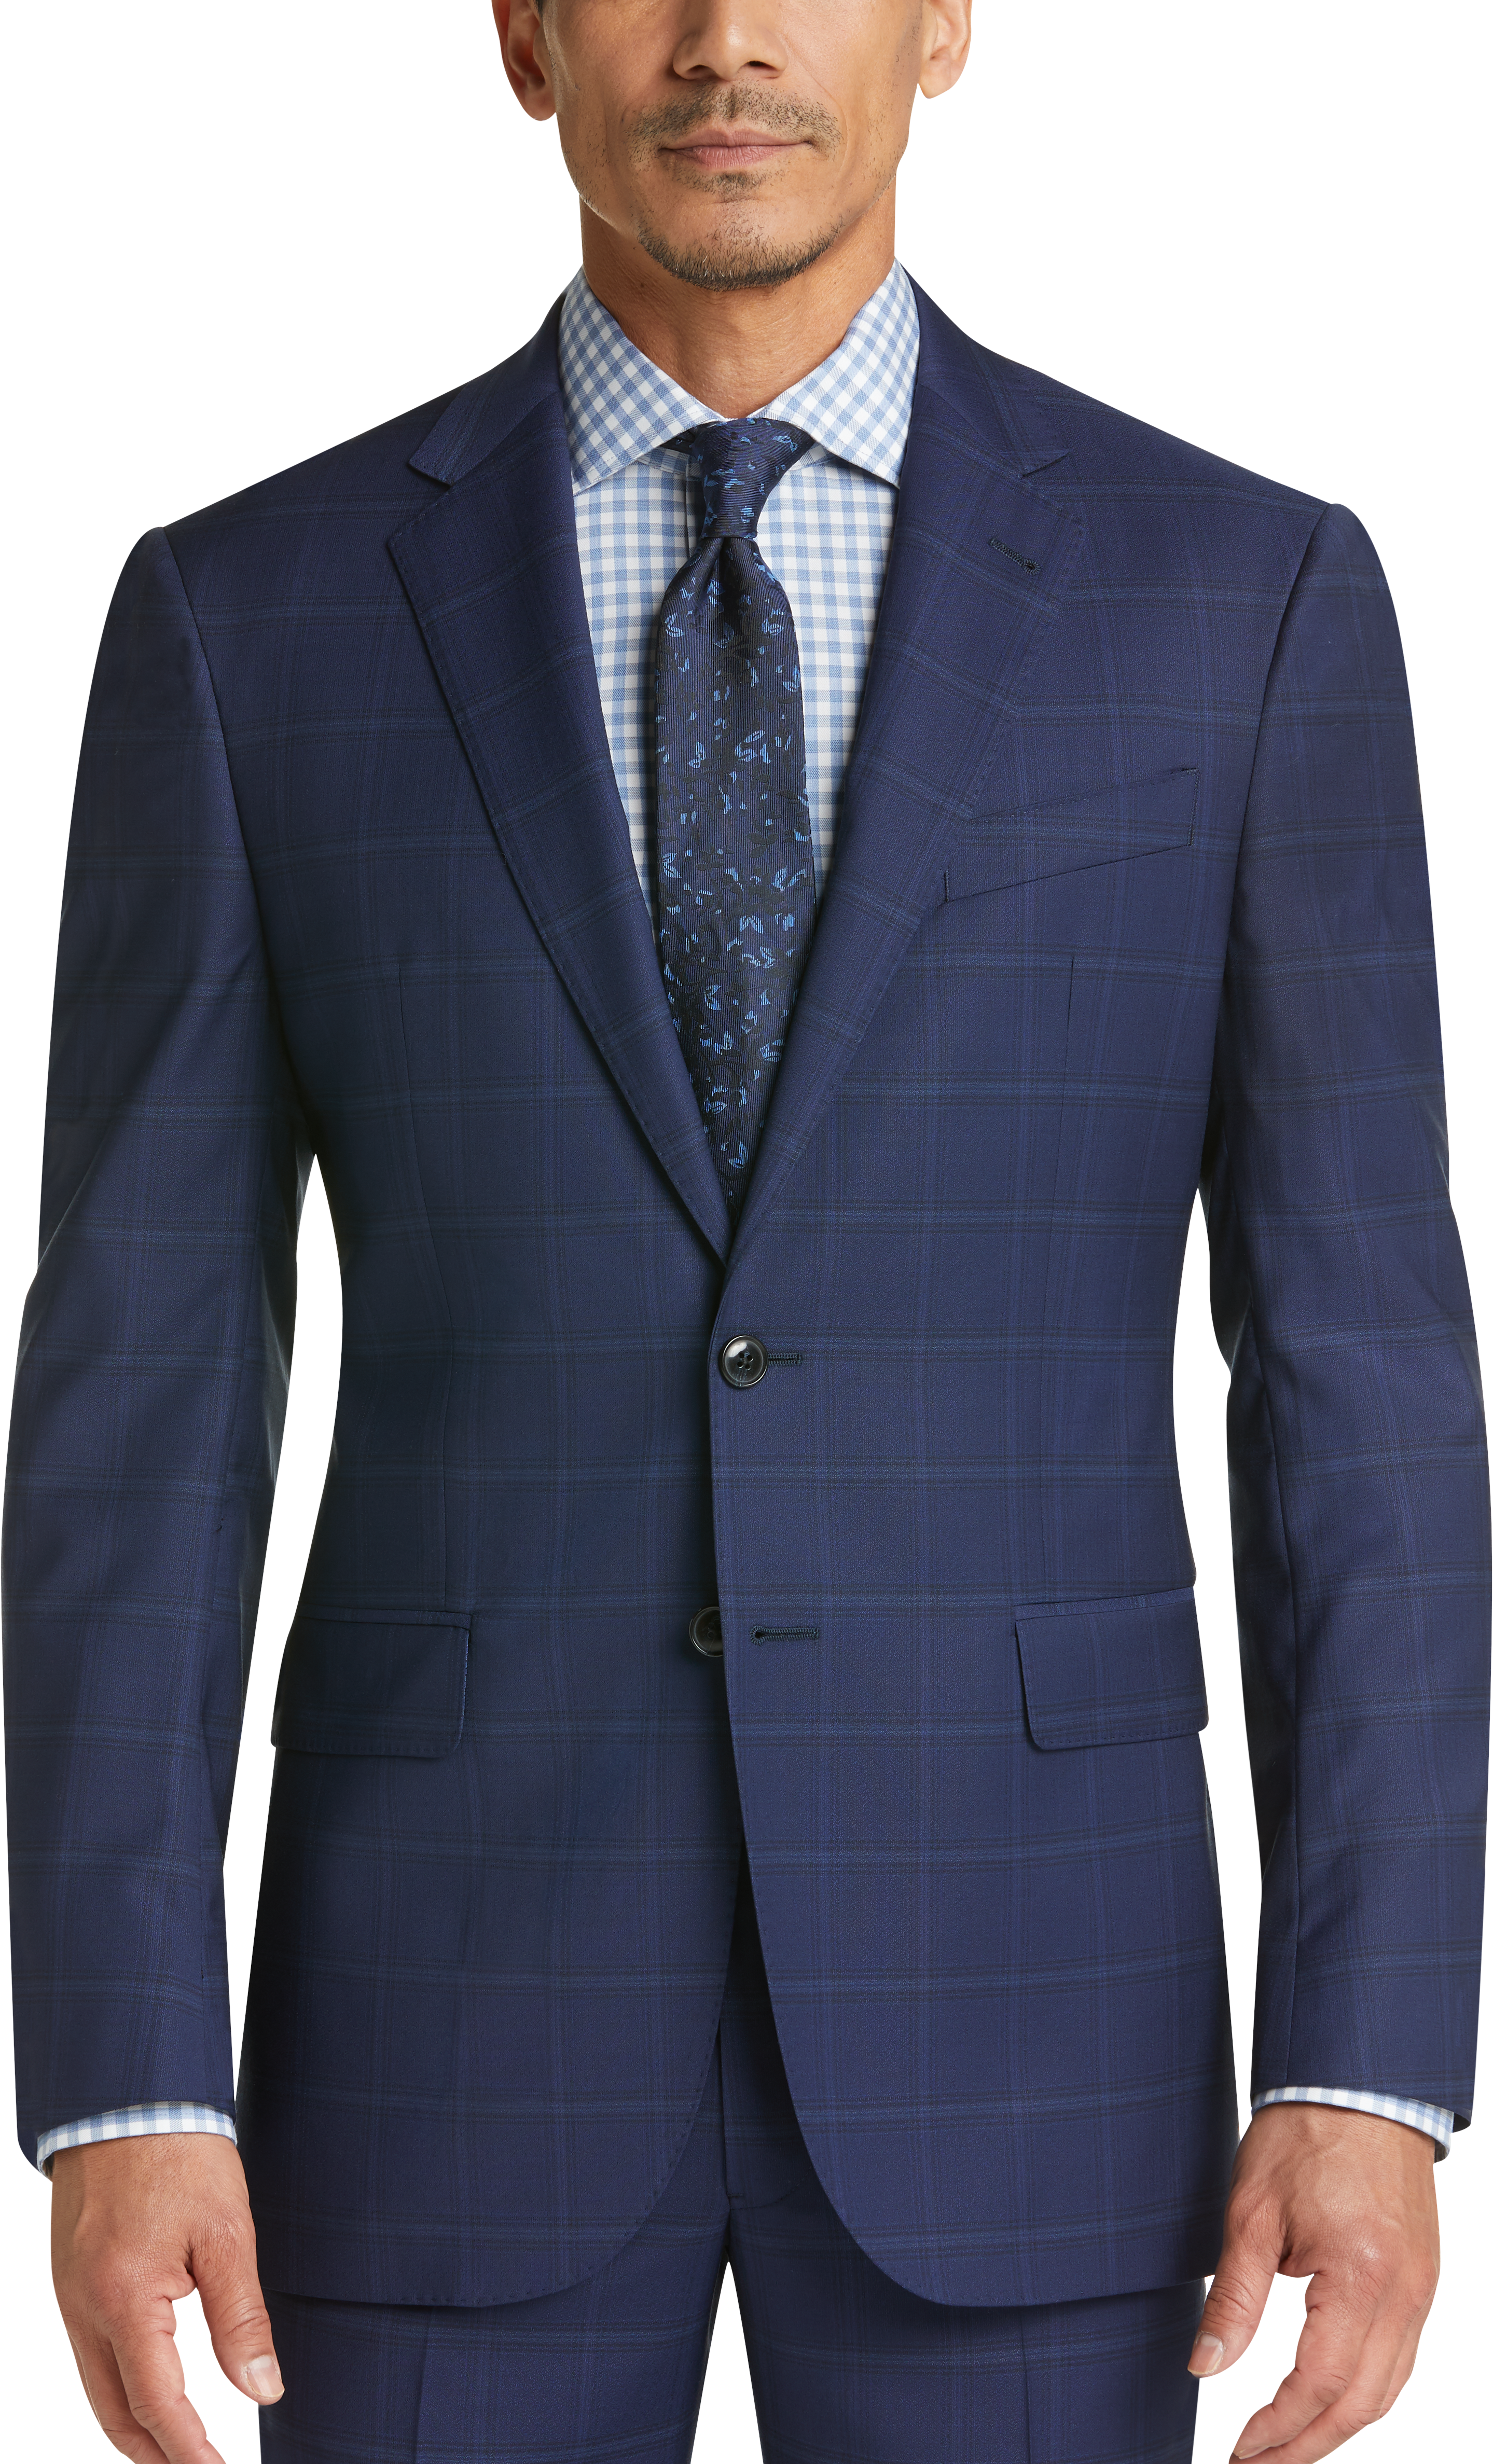 Joseph Abboud Heritage Blue Plaid Modern Fit Suit - Men's Sale | Men's ...